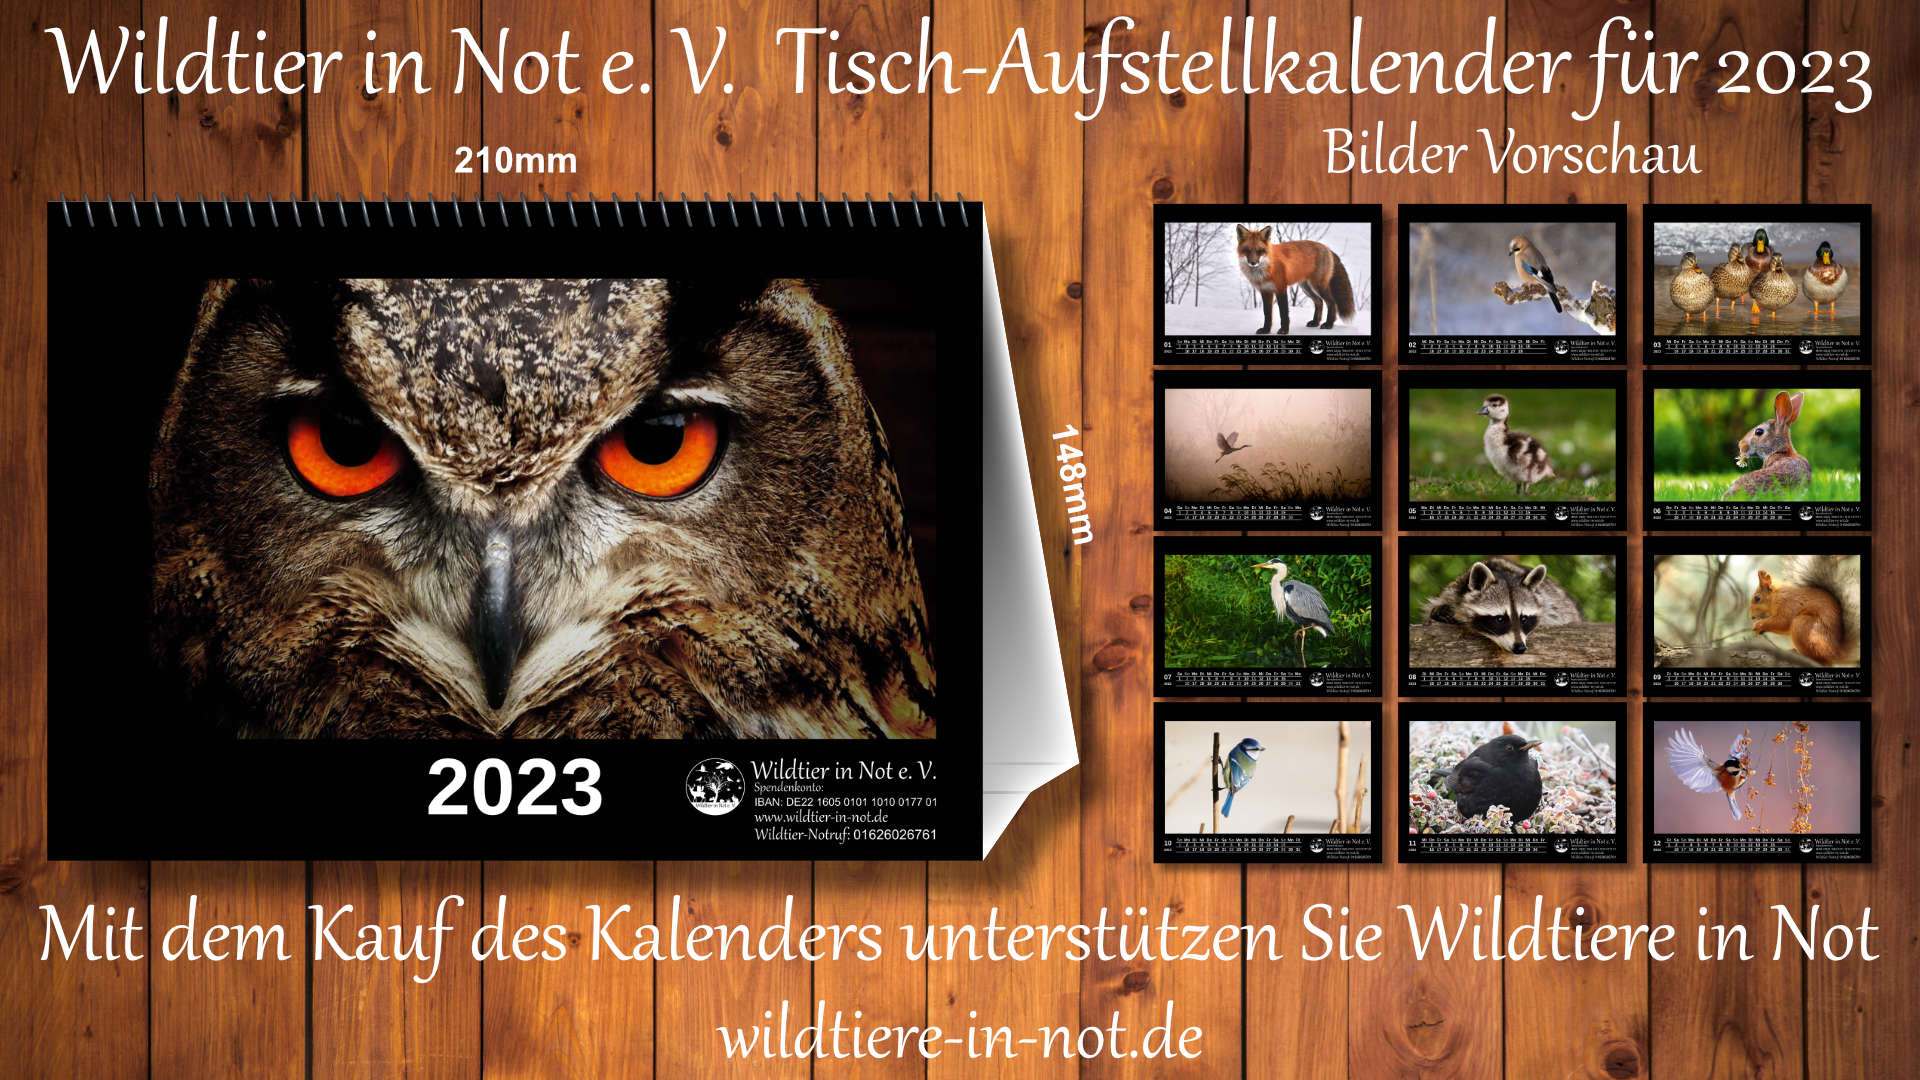 Tisch - Aufstell - Kalender 2023 | wildtier-in-not.de